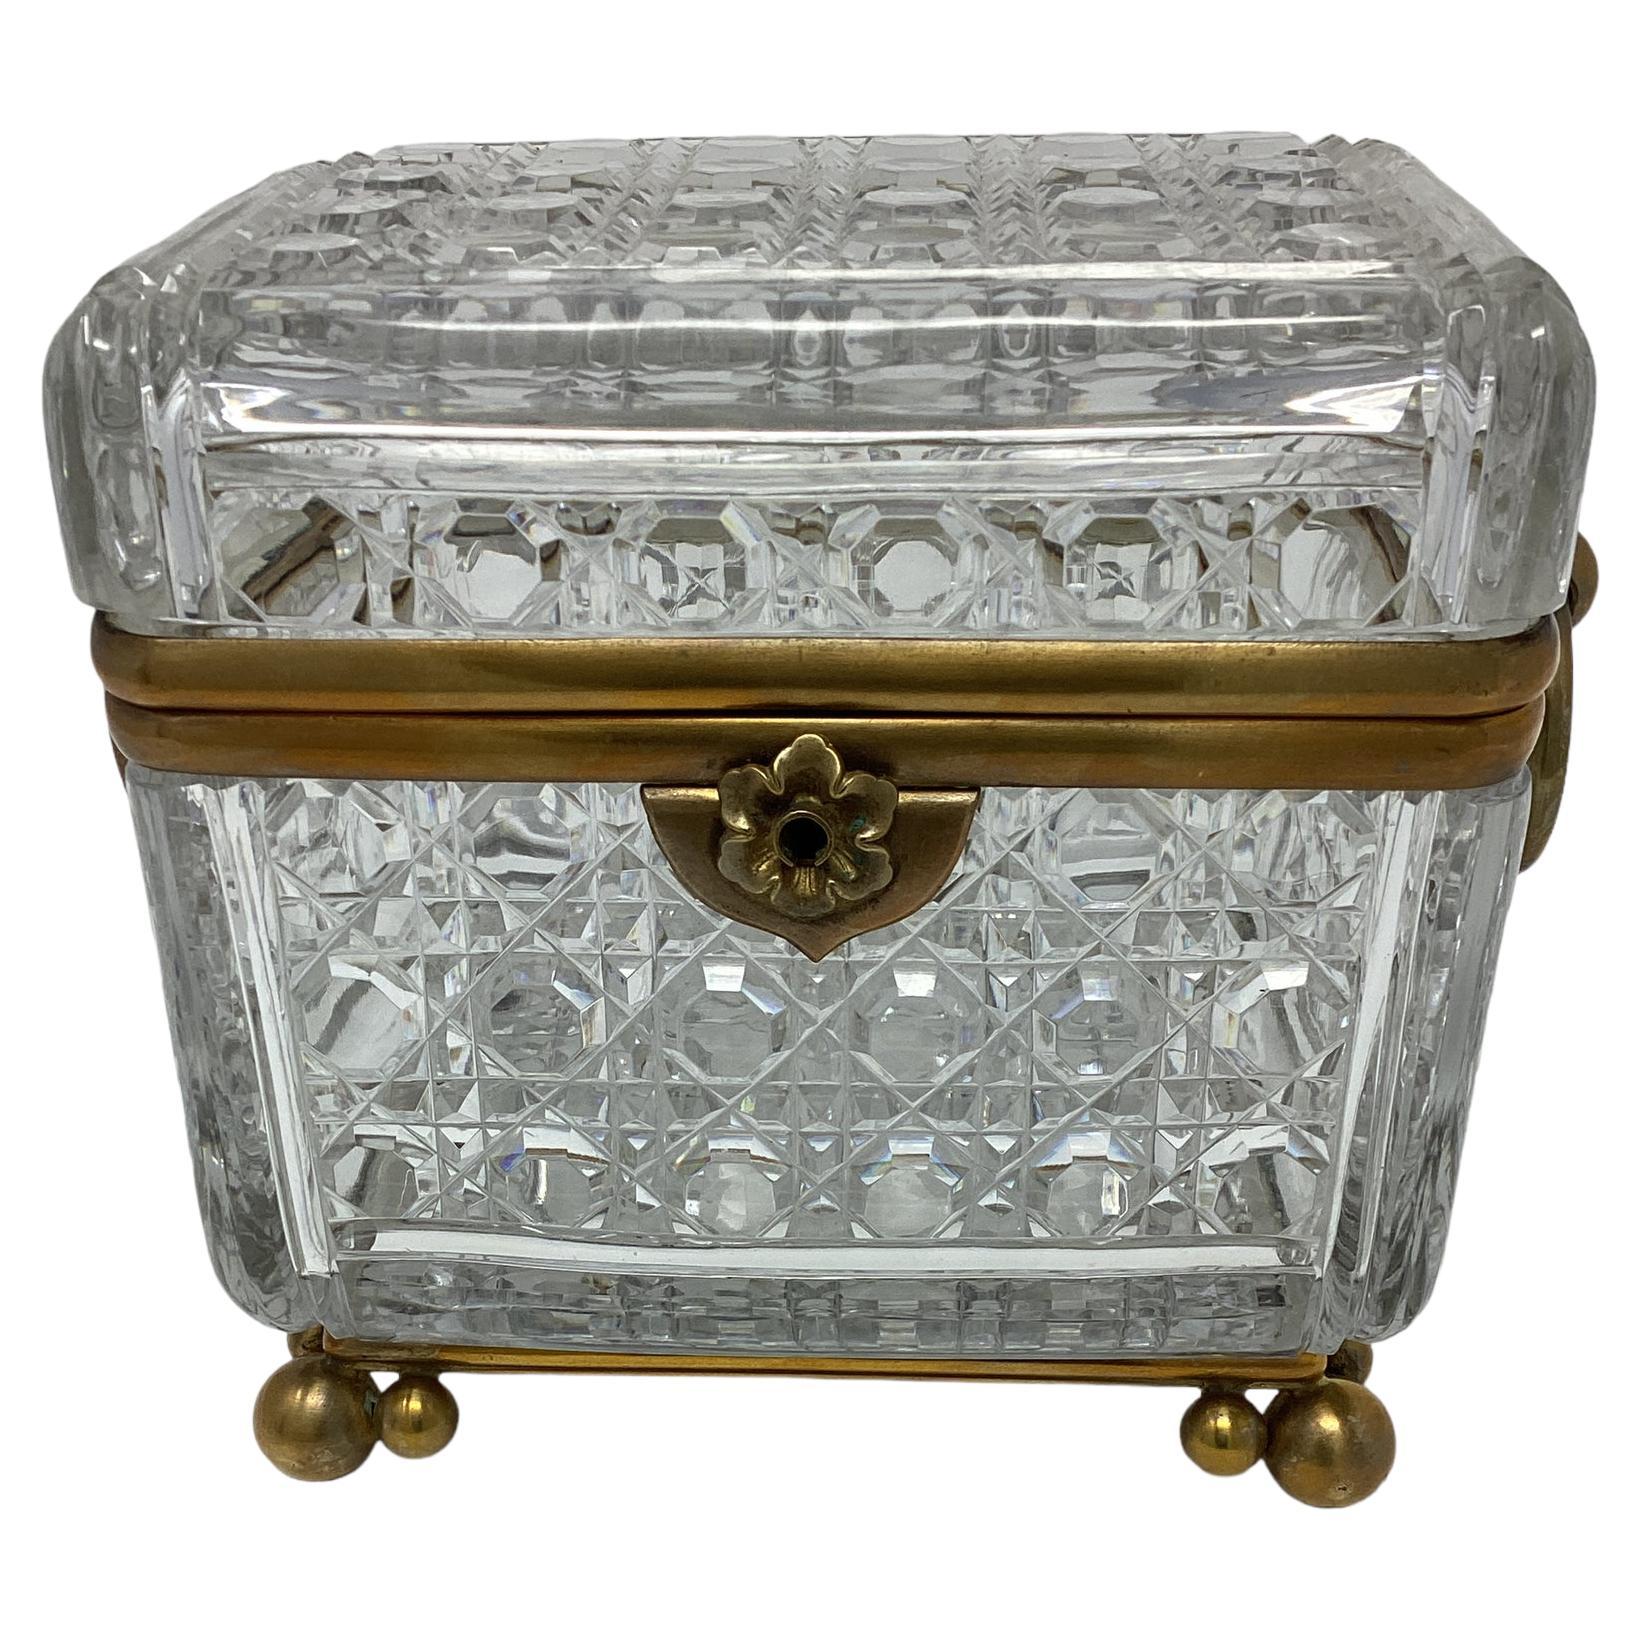 Antike französische Kristalldose mit Ringgriffen. Schwerer geschliffener Kristall in einem rautenförmigen Design. Die Box steht auf 3 runden Kugelfüßen.